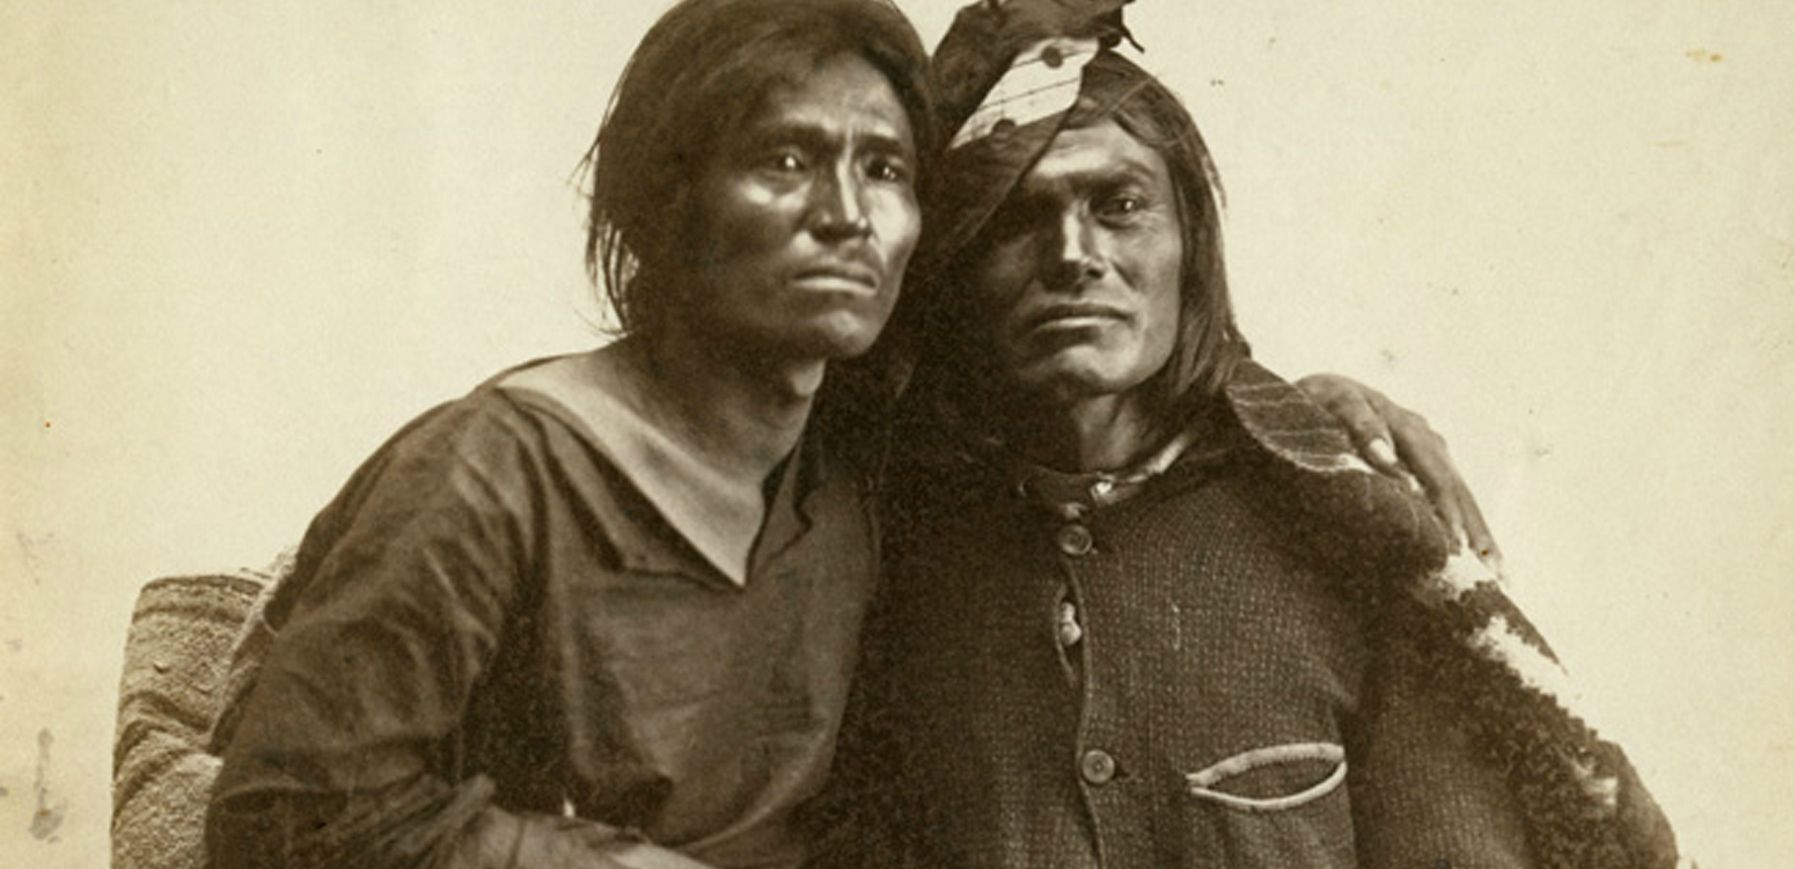 nativos-americanos